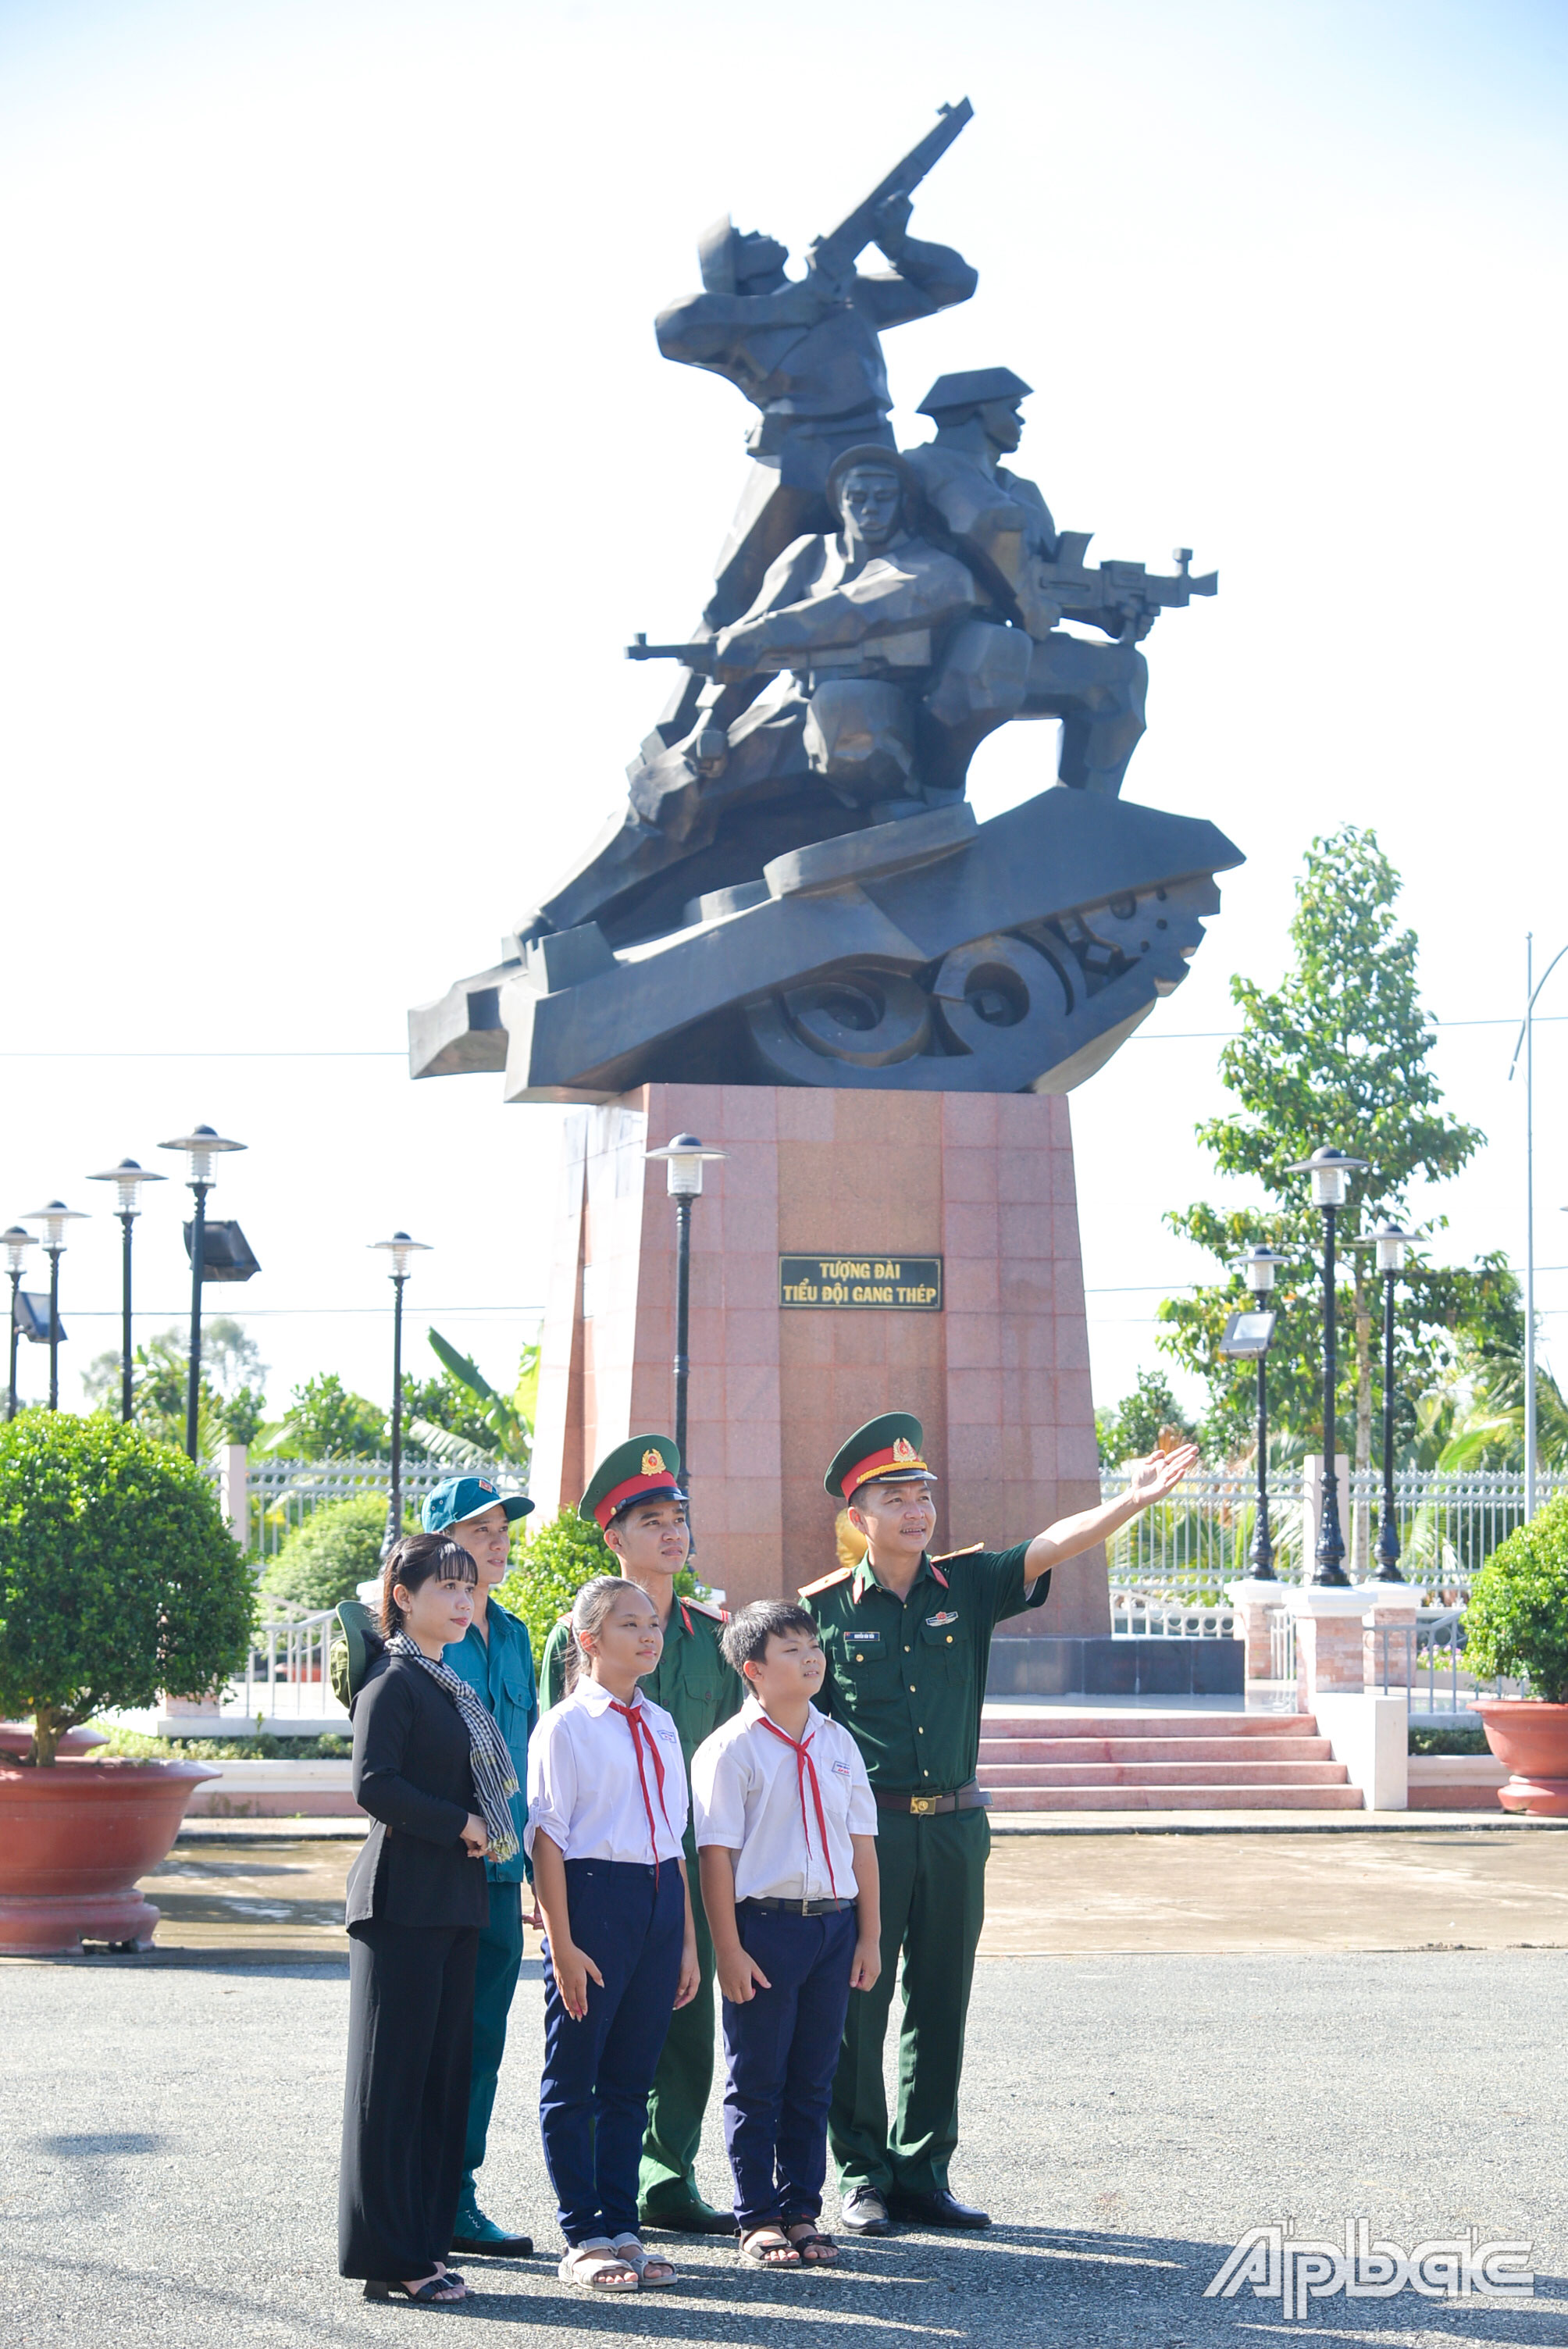 Thế hệ trẻ Tân Phú tự hào về truyền thống quê hương Ấp Bắc anh hùng.